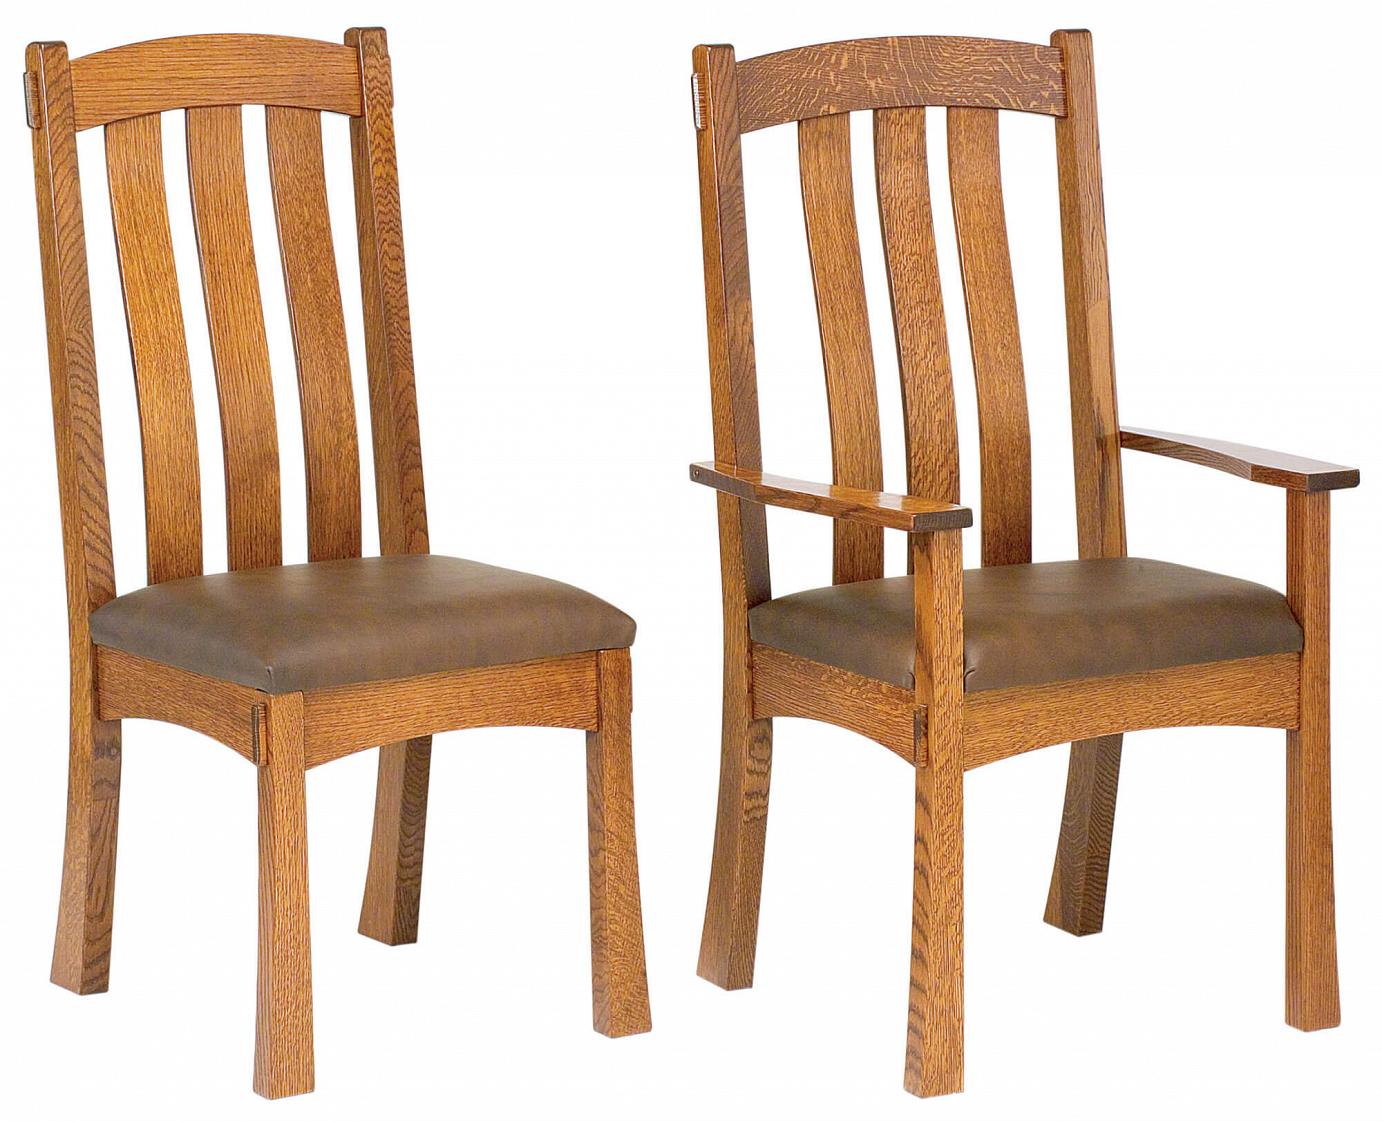 RH Yoder Modesto Chairs